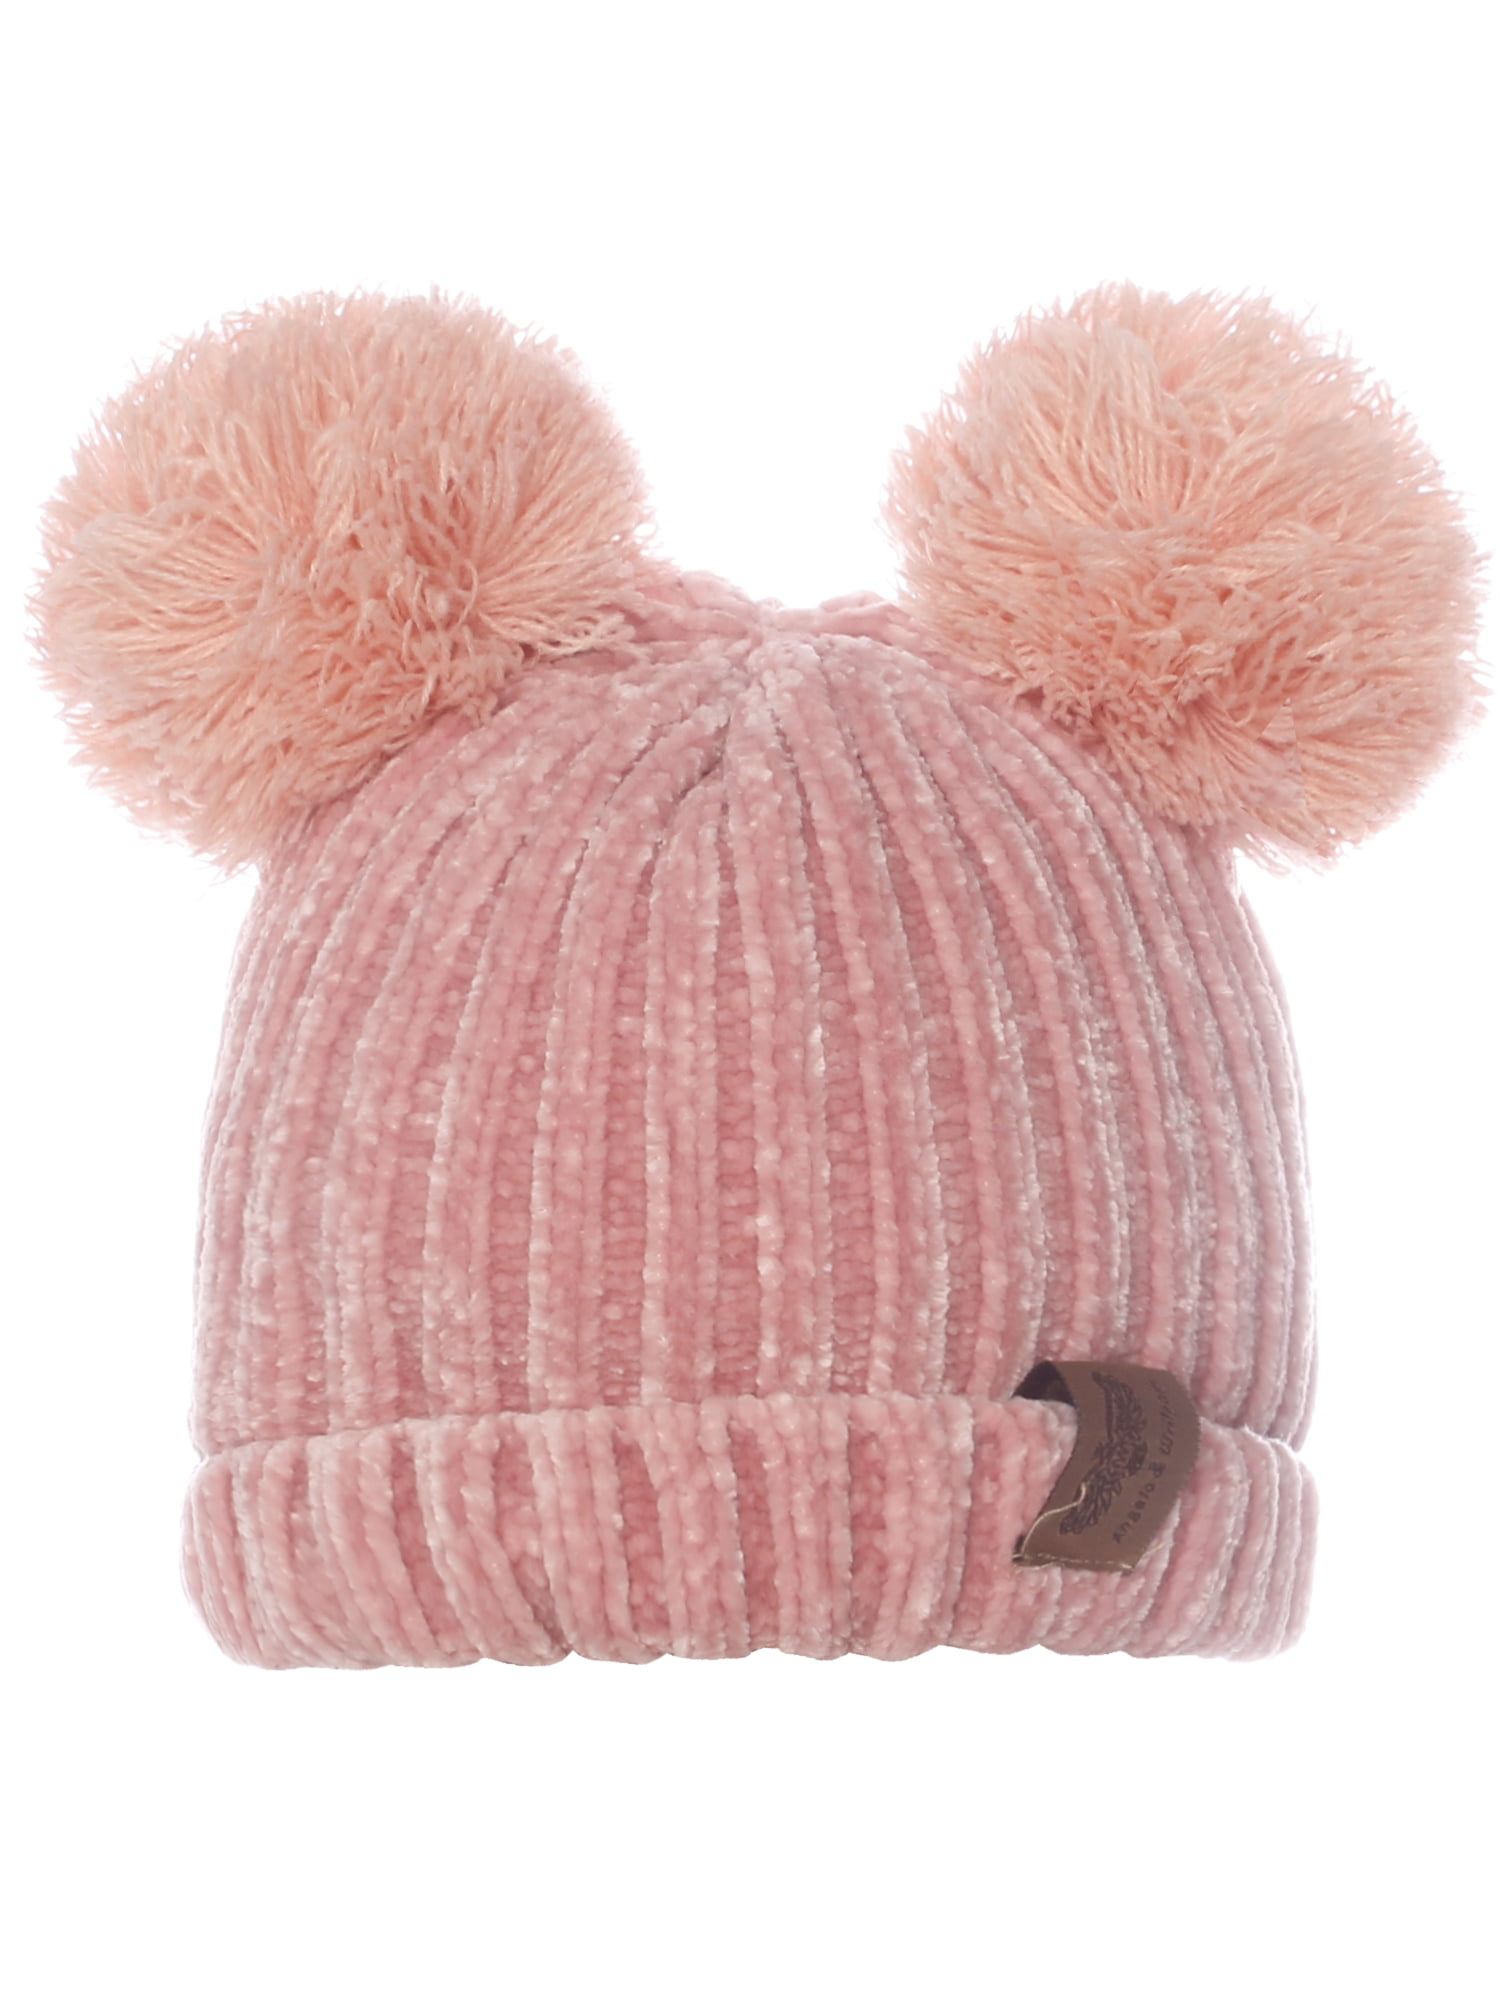 Emmalise Kids Cute Fuzzy Animal Look Double Pom Pom Ears Beanie Winter Knit Hat 